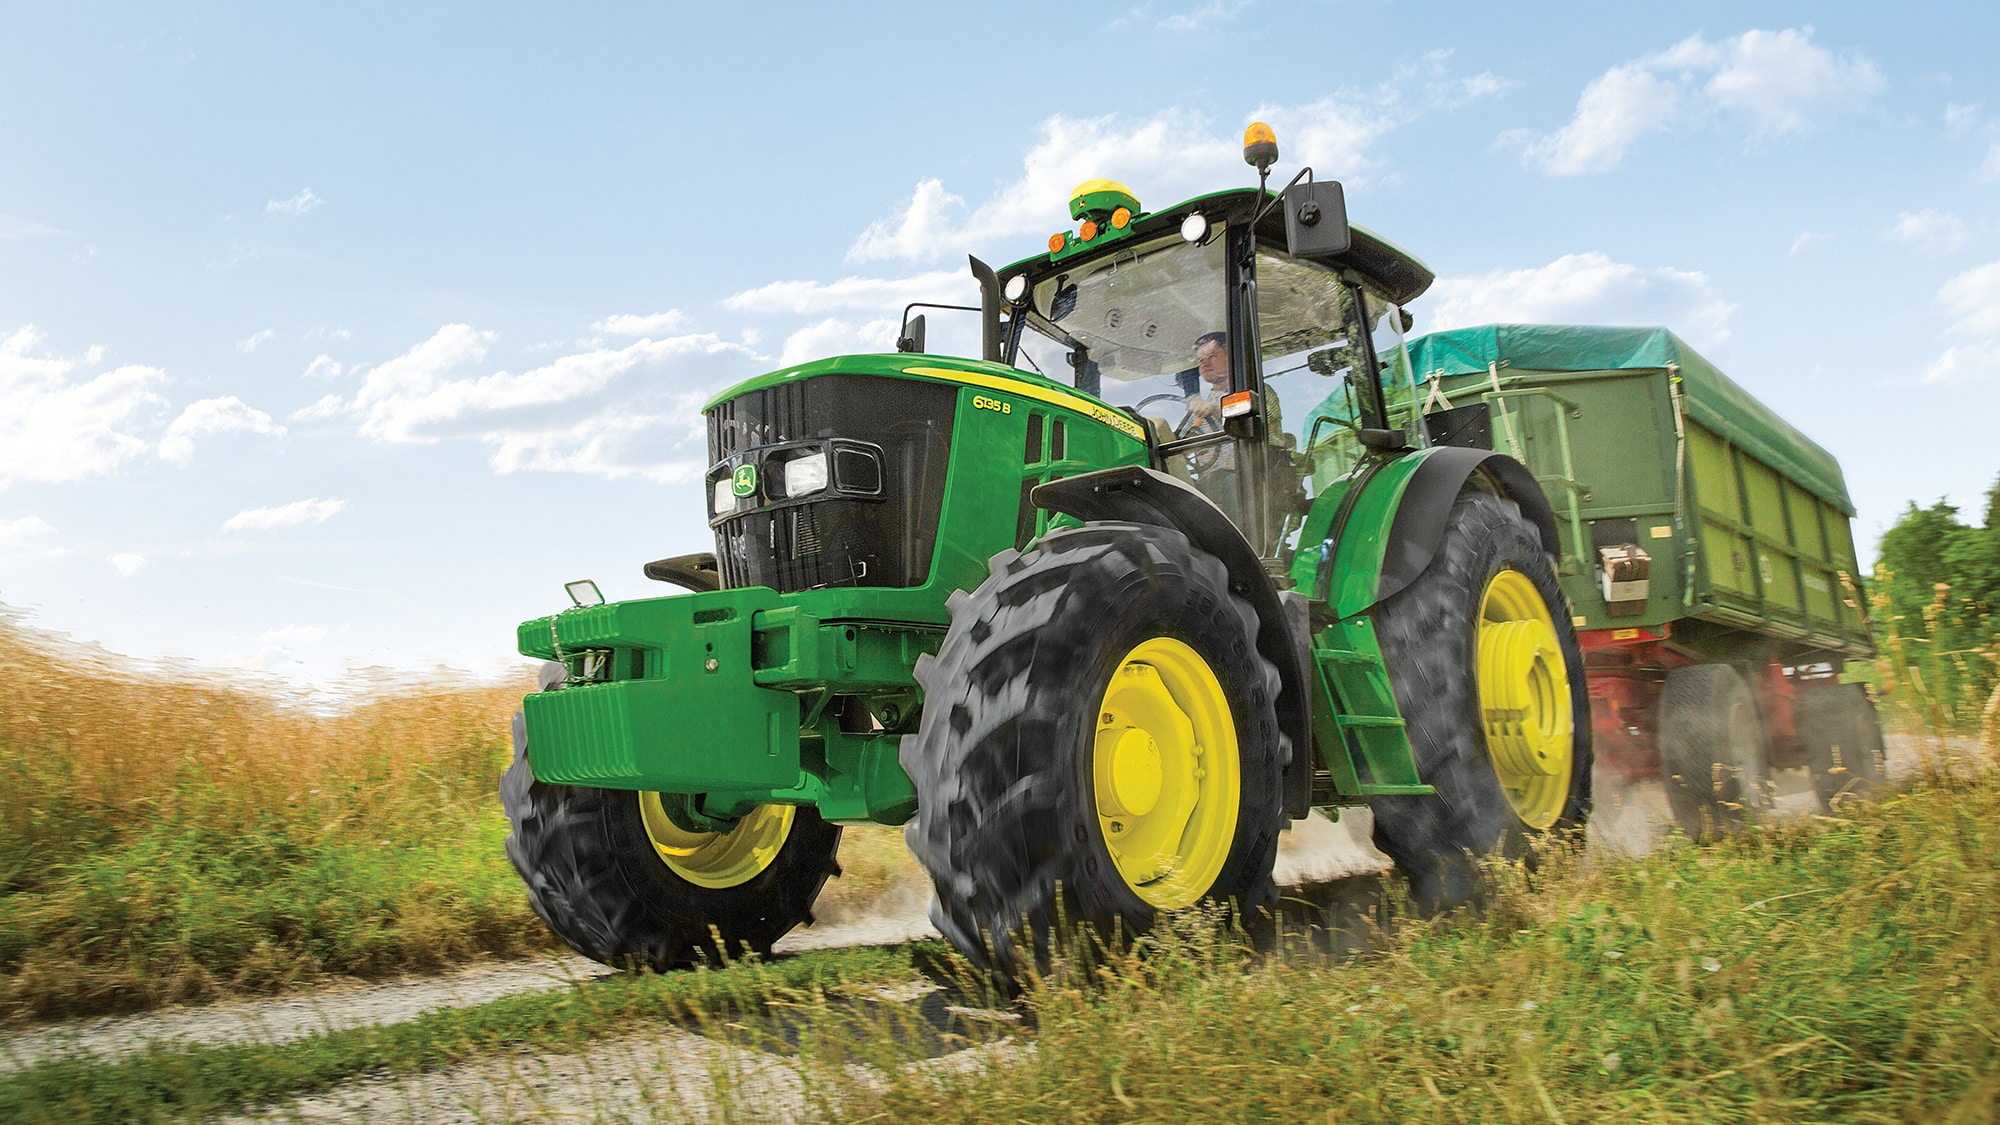 John Deere 6R 135 Utility Tractor - RDO Ag Equipment